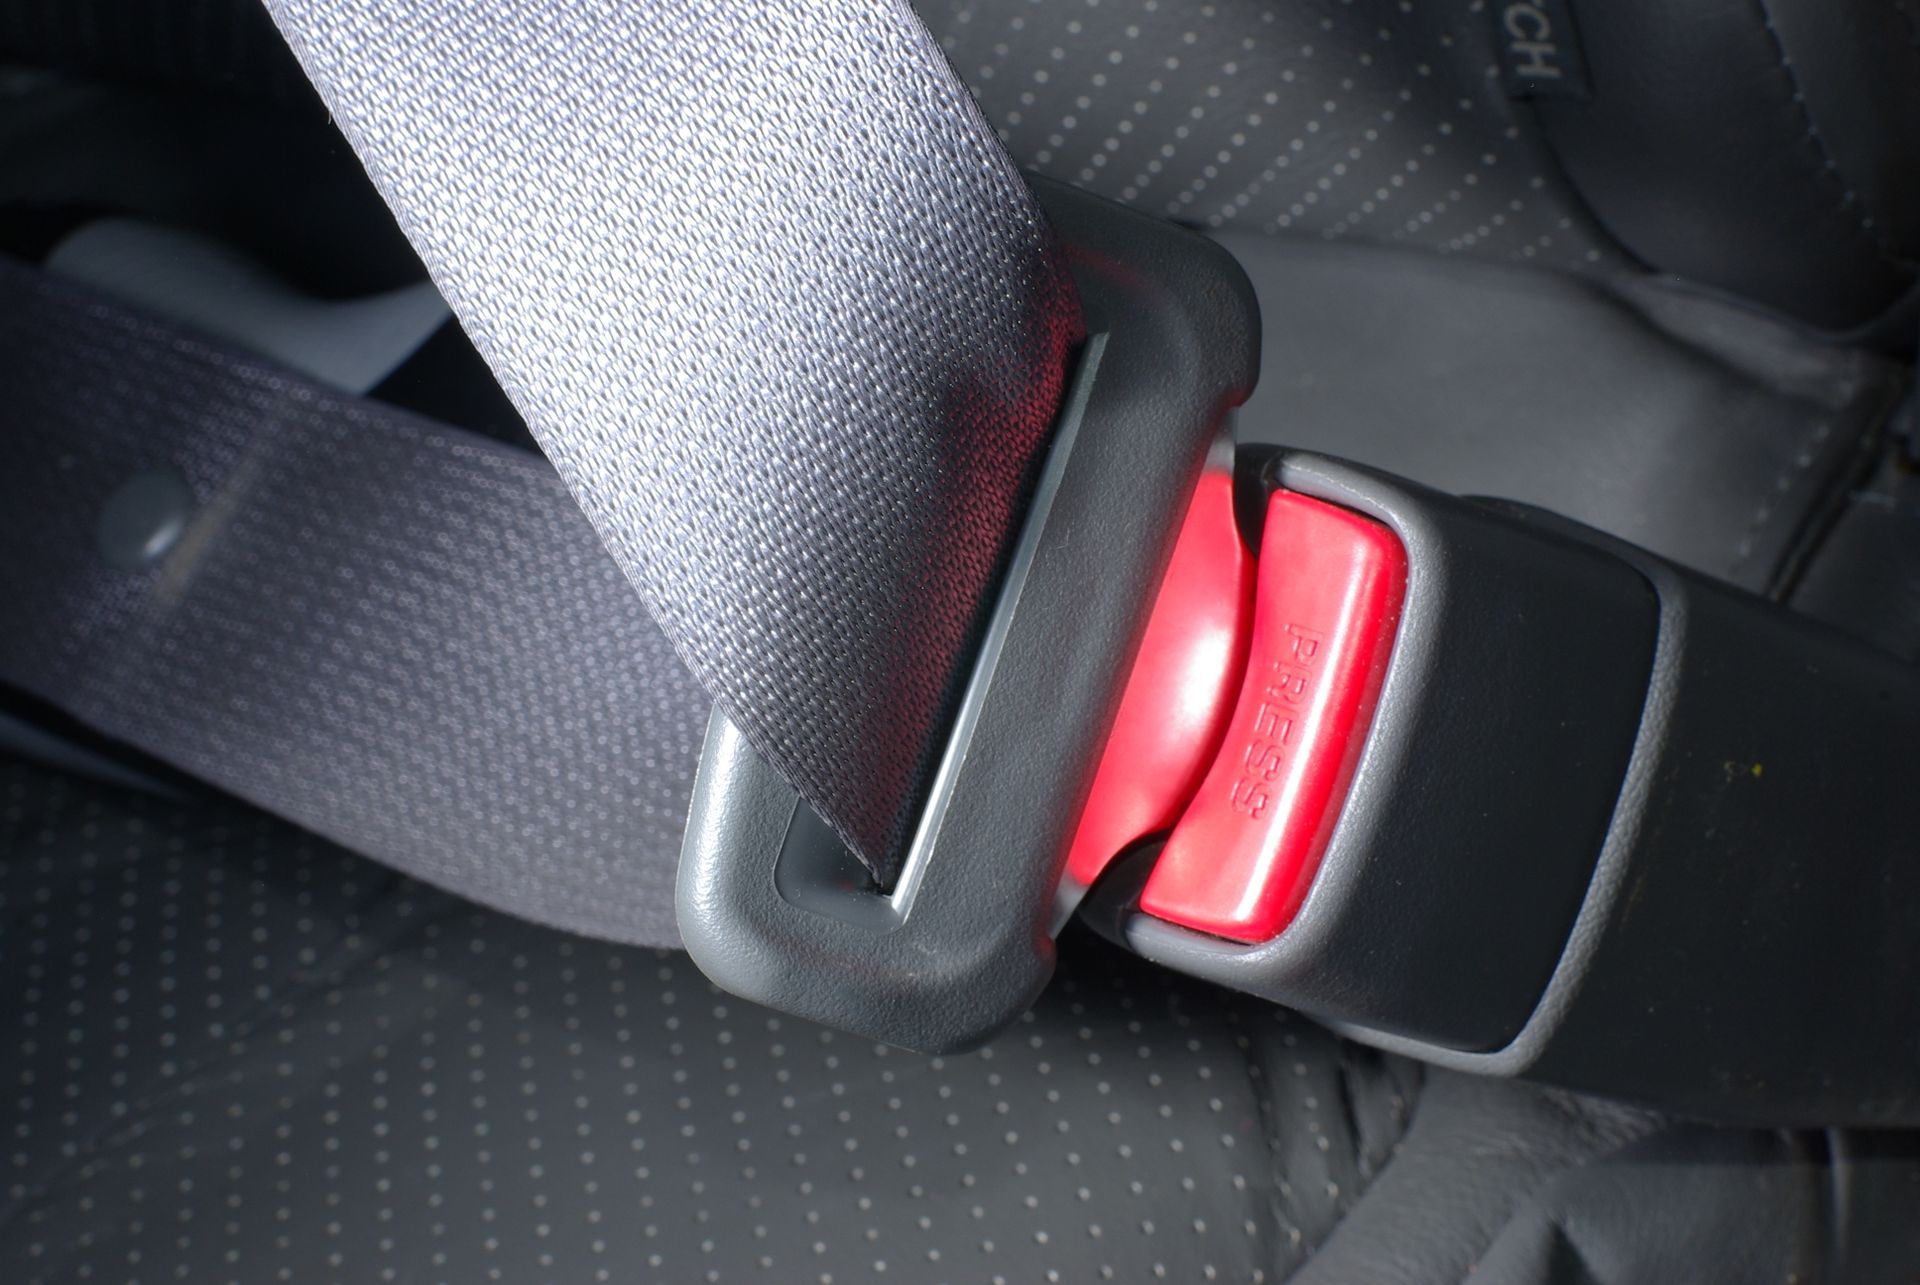 Seat belt syndrome - Wikipedia